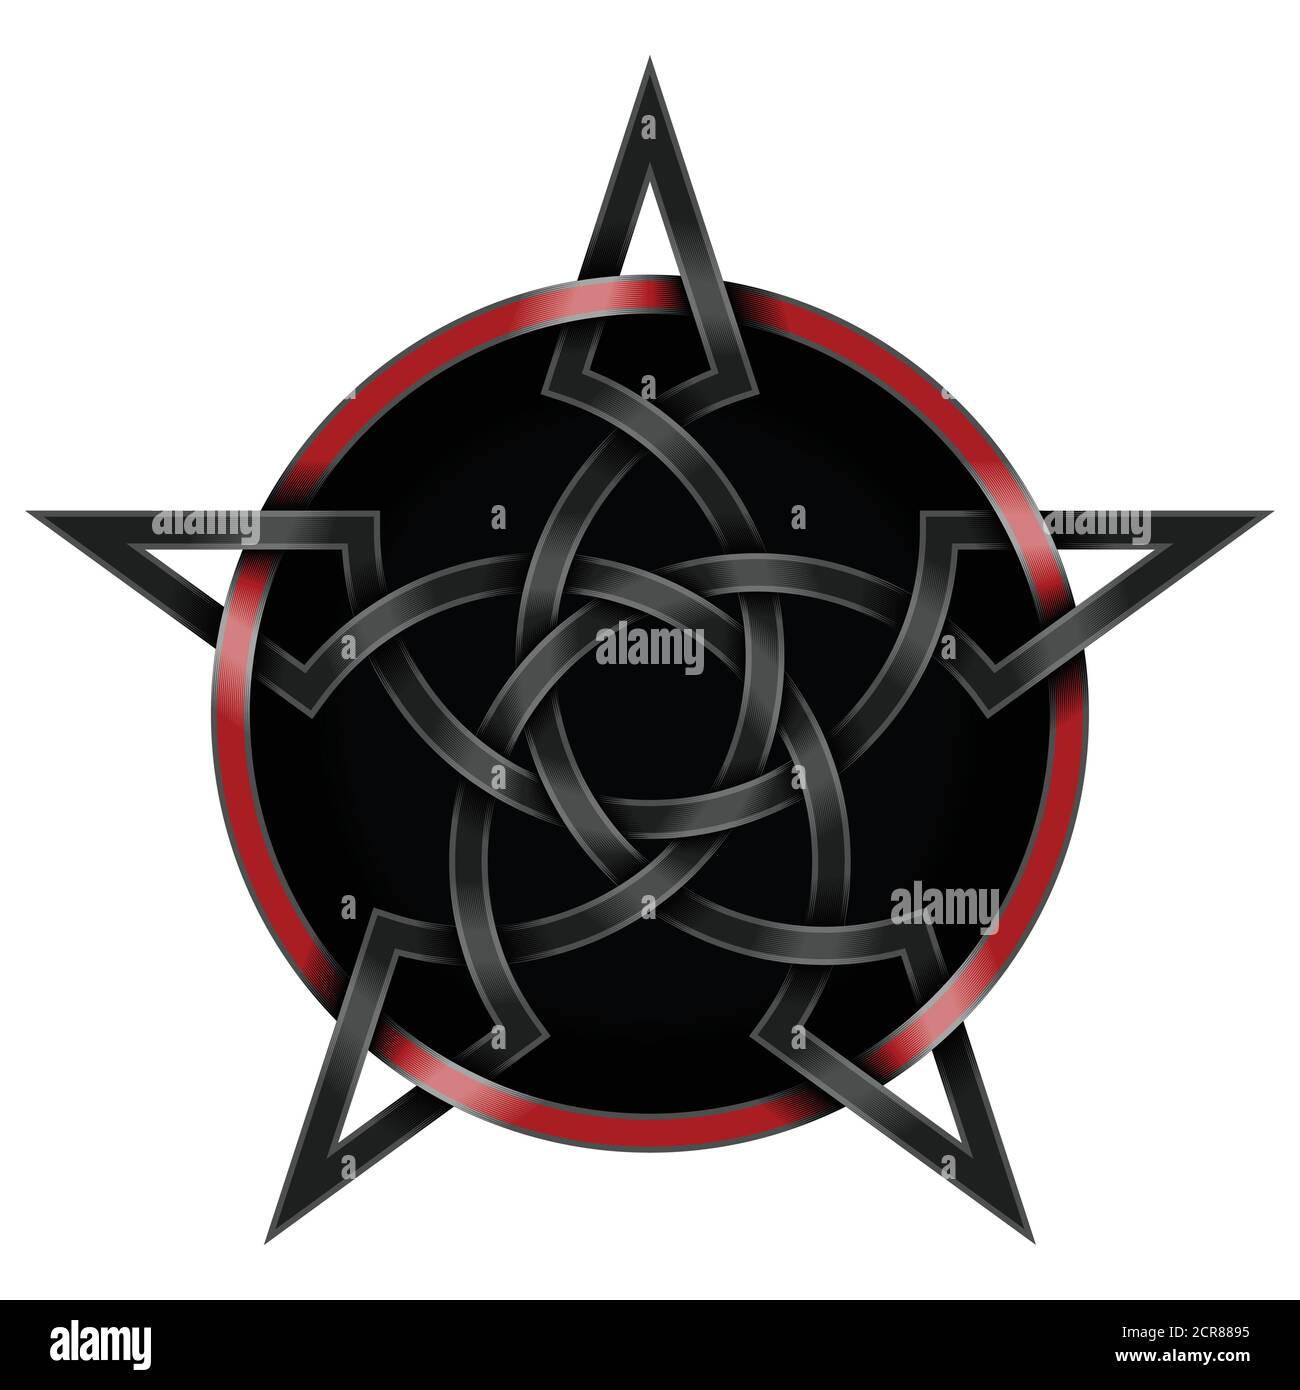 Illustration vectorielle d'une étoile entrelacée de style celtique entourée d'un cercle, avec un arrière-plan noir Illustration de Vecteur